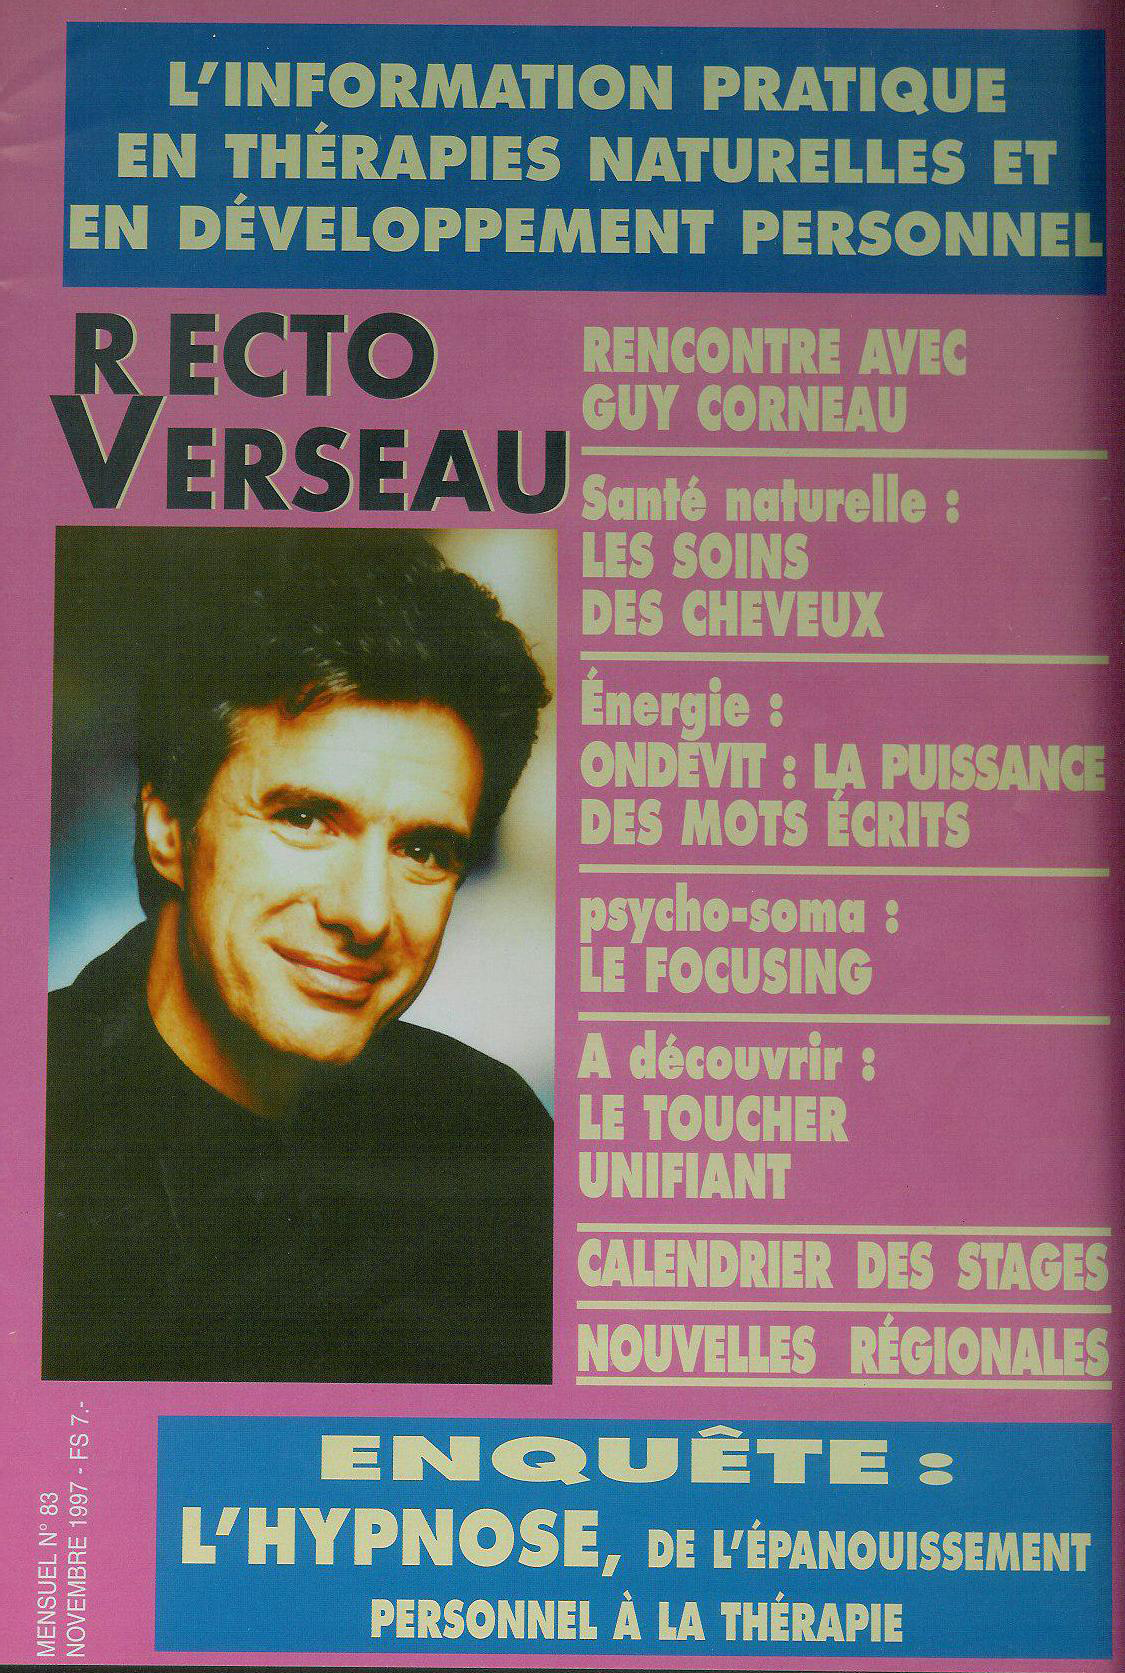 Rect-Verseau copy